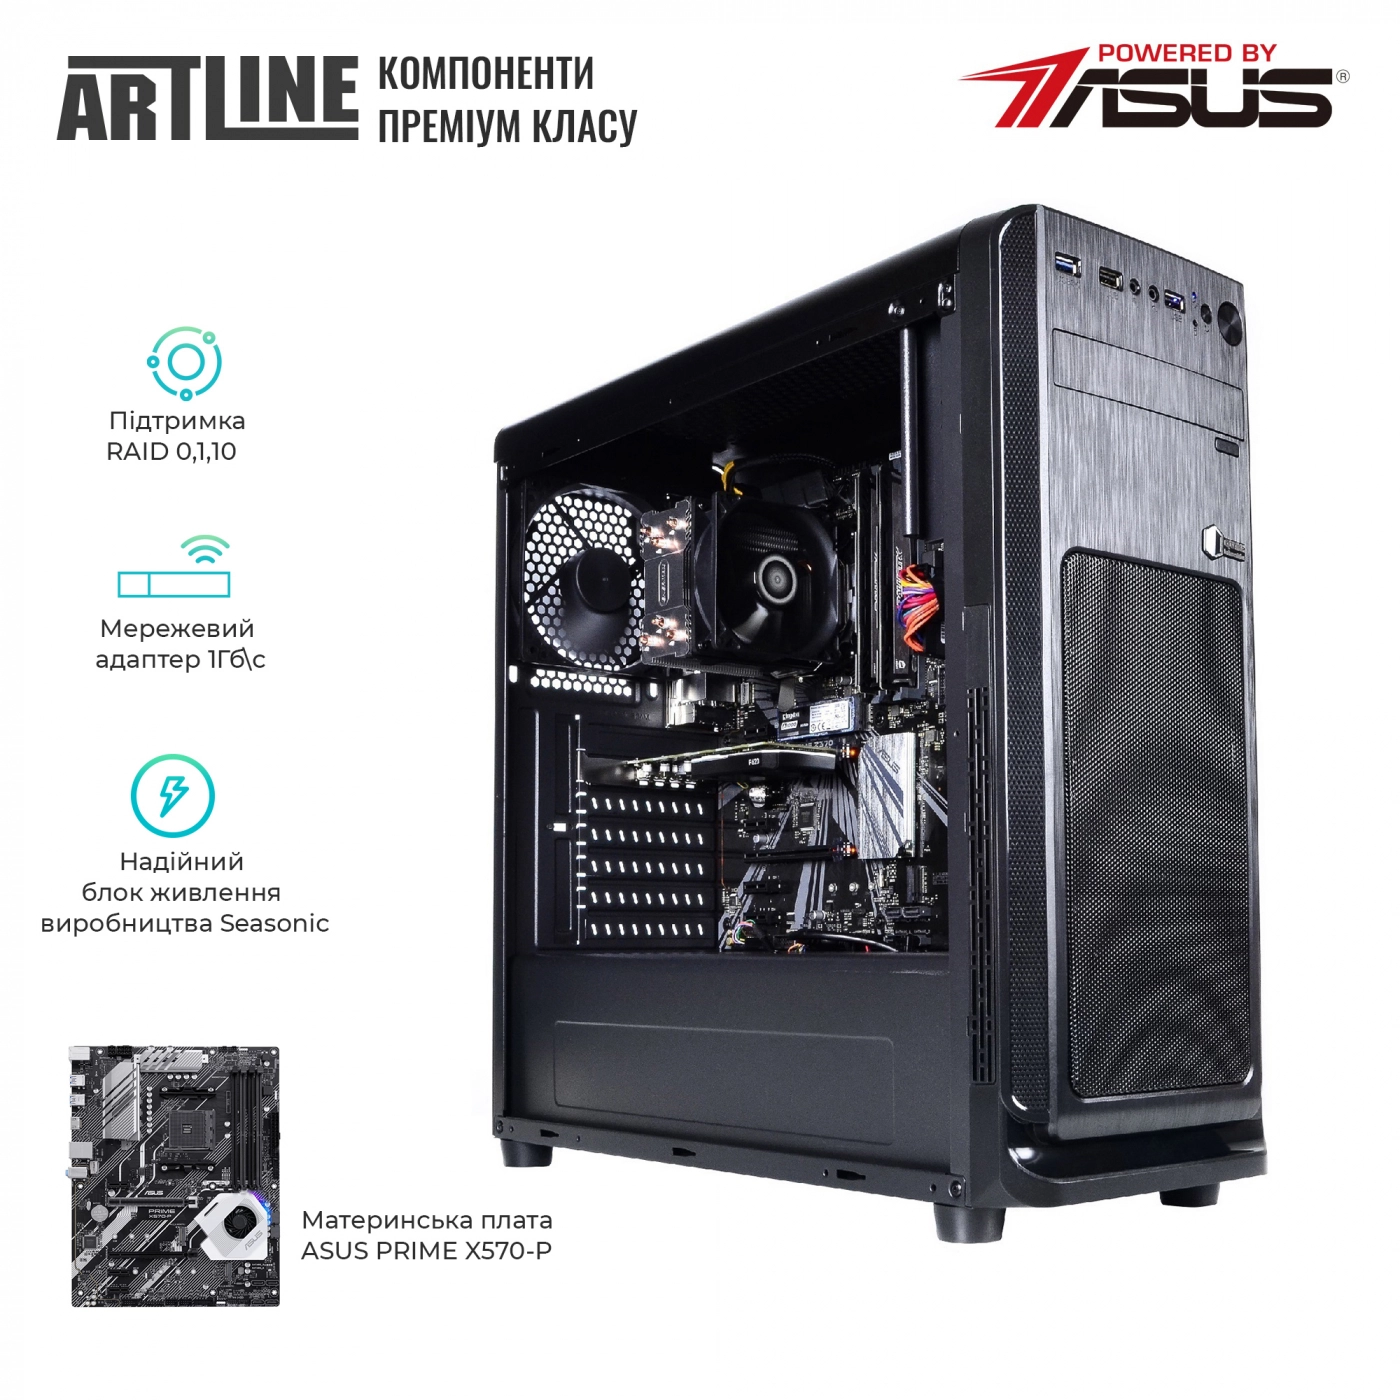 Купить Сервер ARTLINE Business T65v09 - фото 3